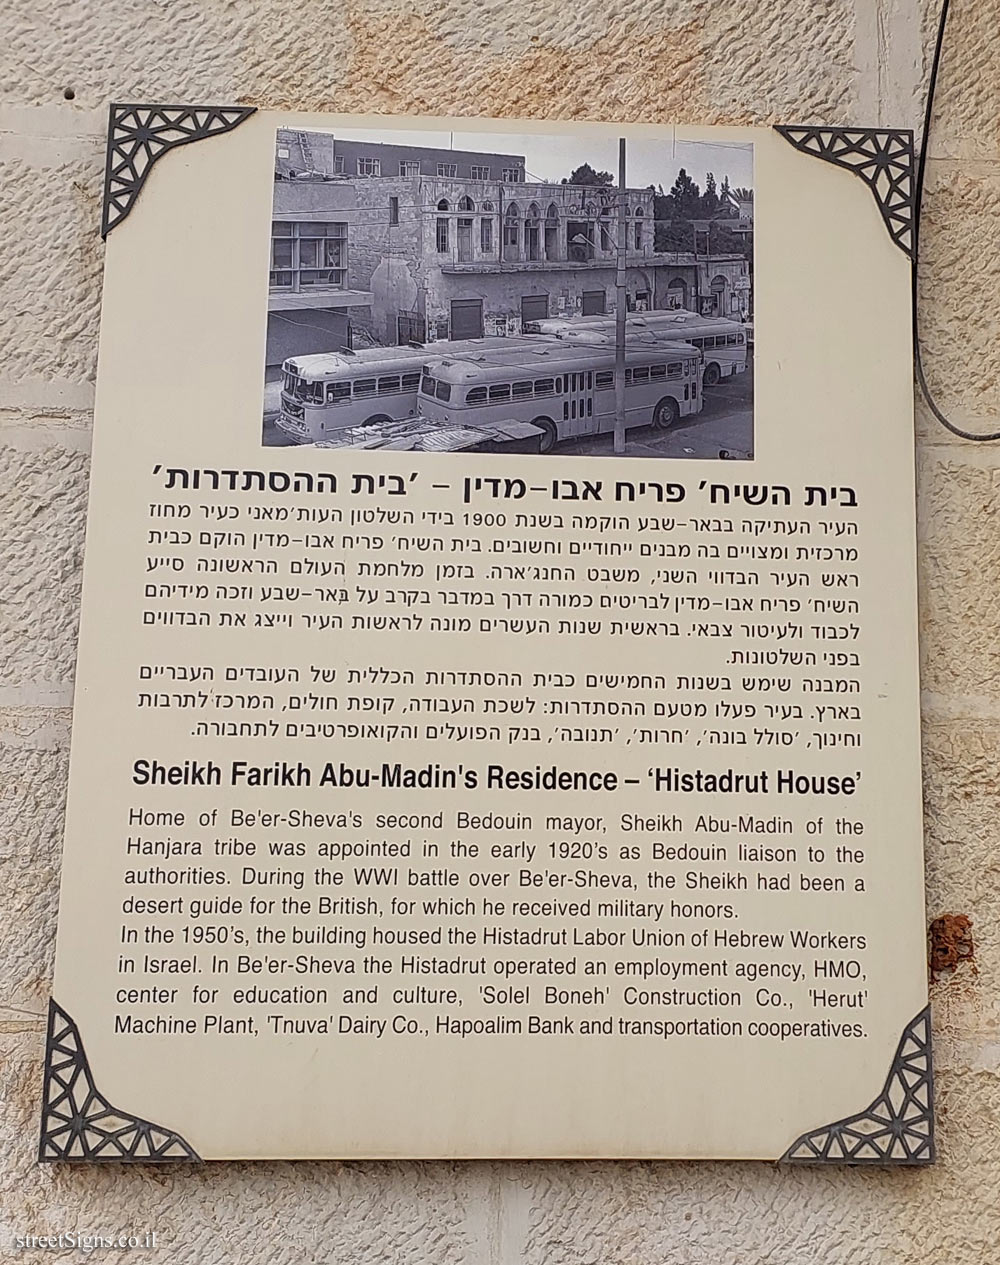 Be’er Sheva - Sheikh Farikh Abu-Madin’s Residence - ’Histadrut House’